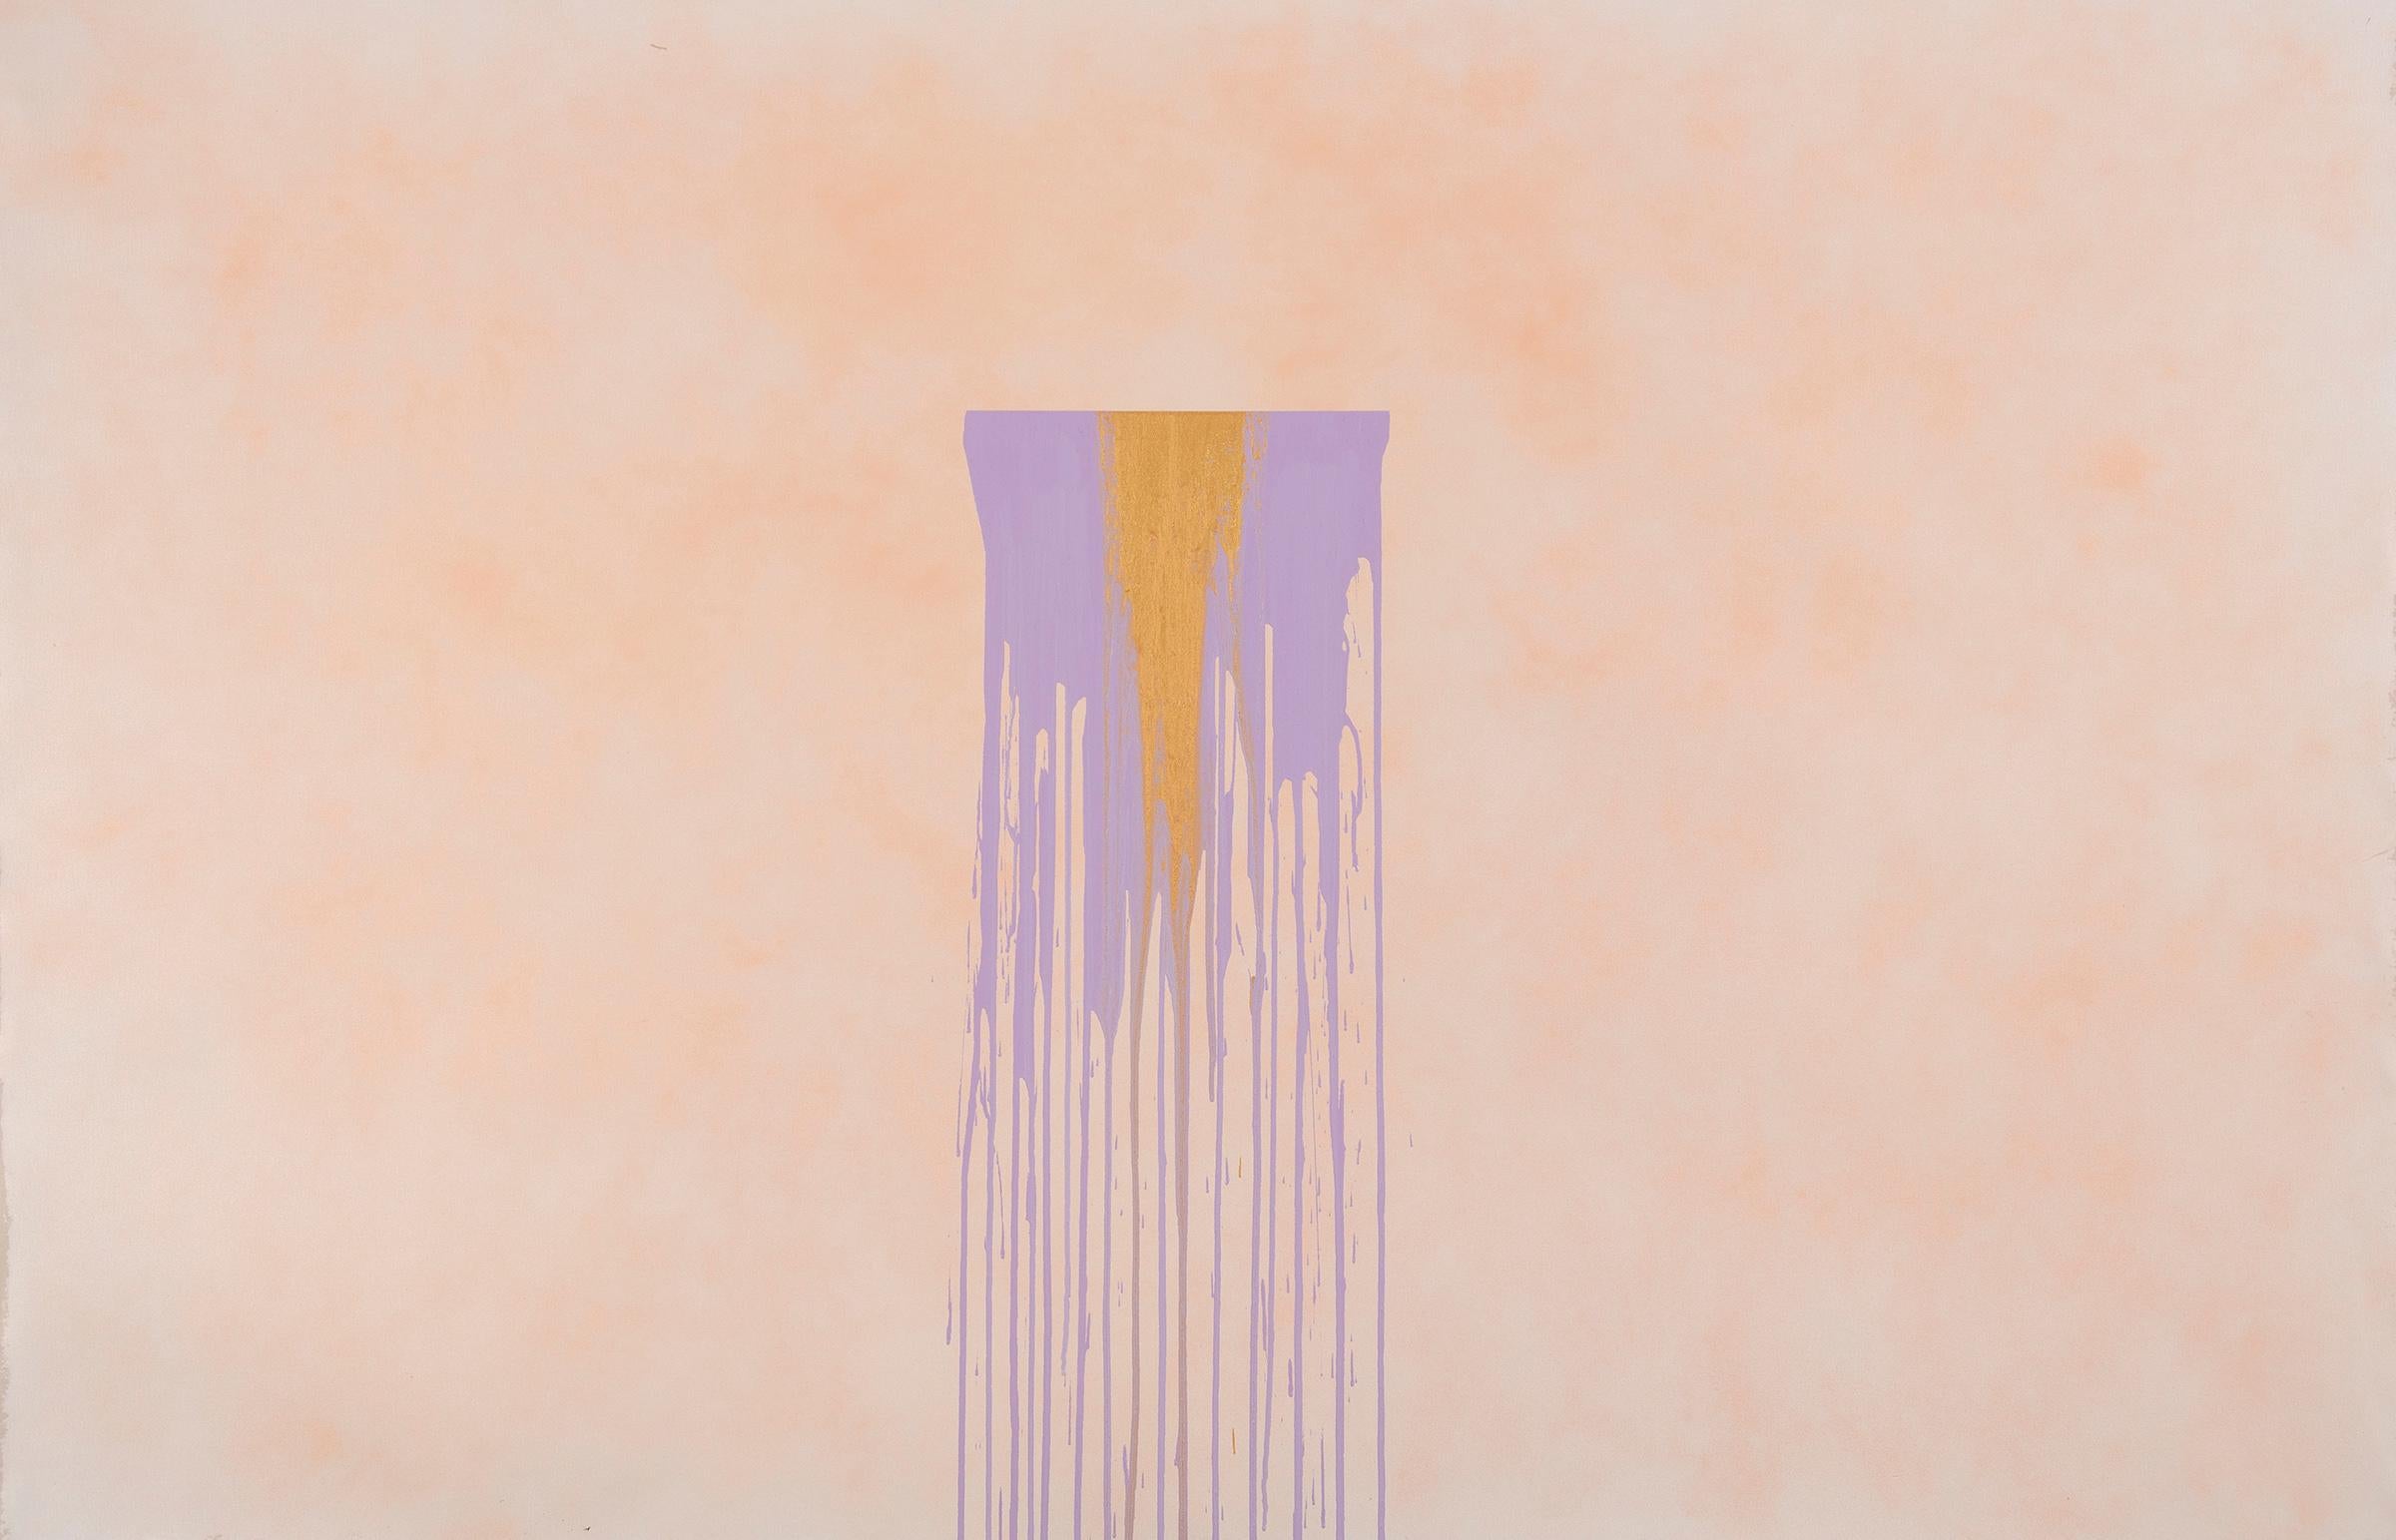 
Lester Rapaport

Robins Passing, gemalt 2015, besteht aus einem atmosphärischen, gesprühten Hintergrund und einer zentralen, mit Farbe beträufelten Geisterfigur. Rapaport spielt seit 1971 immer wieder mit getropfter Acrylfarbe. Die Serie "ein neues